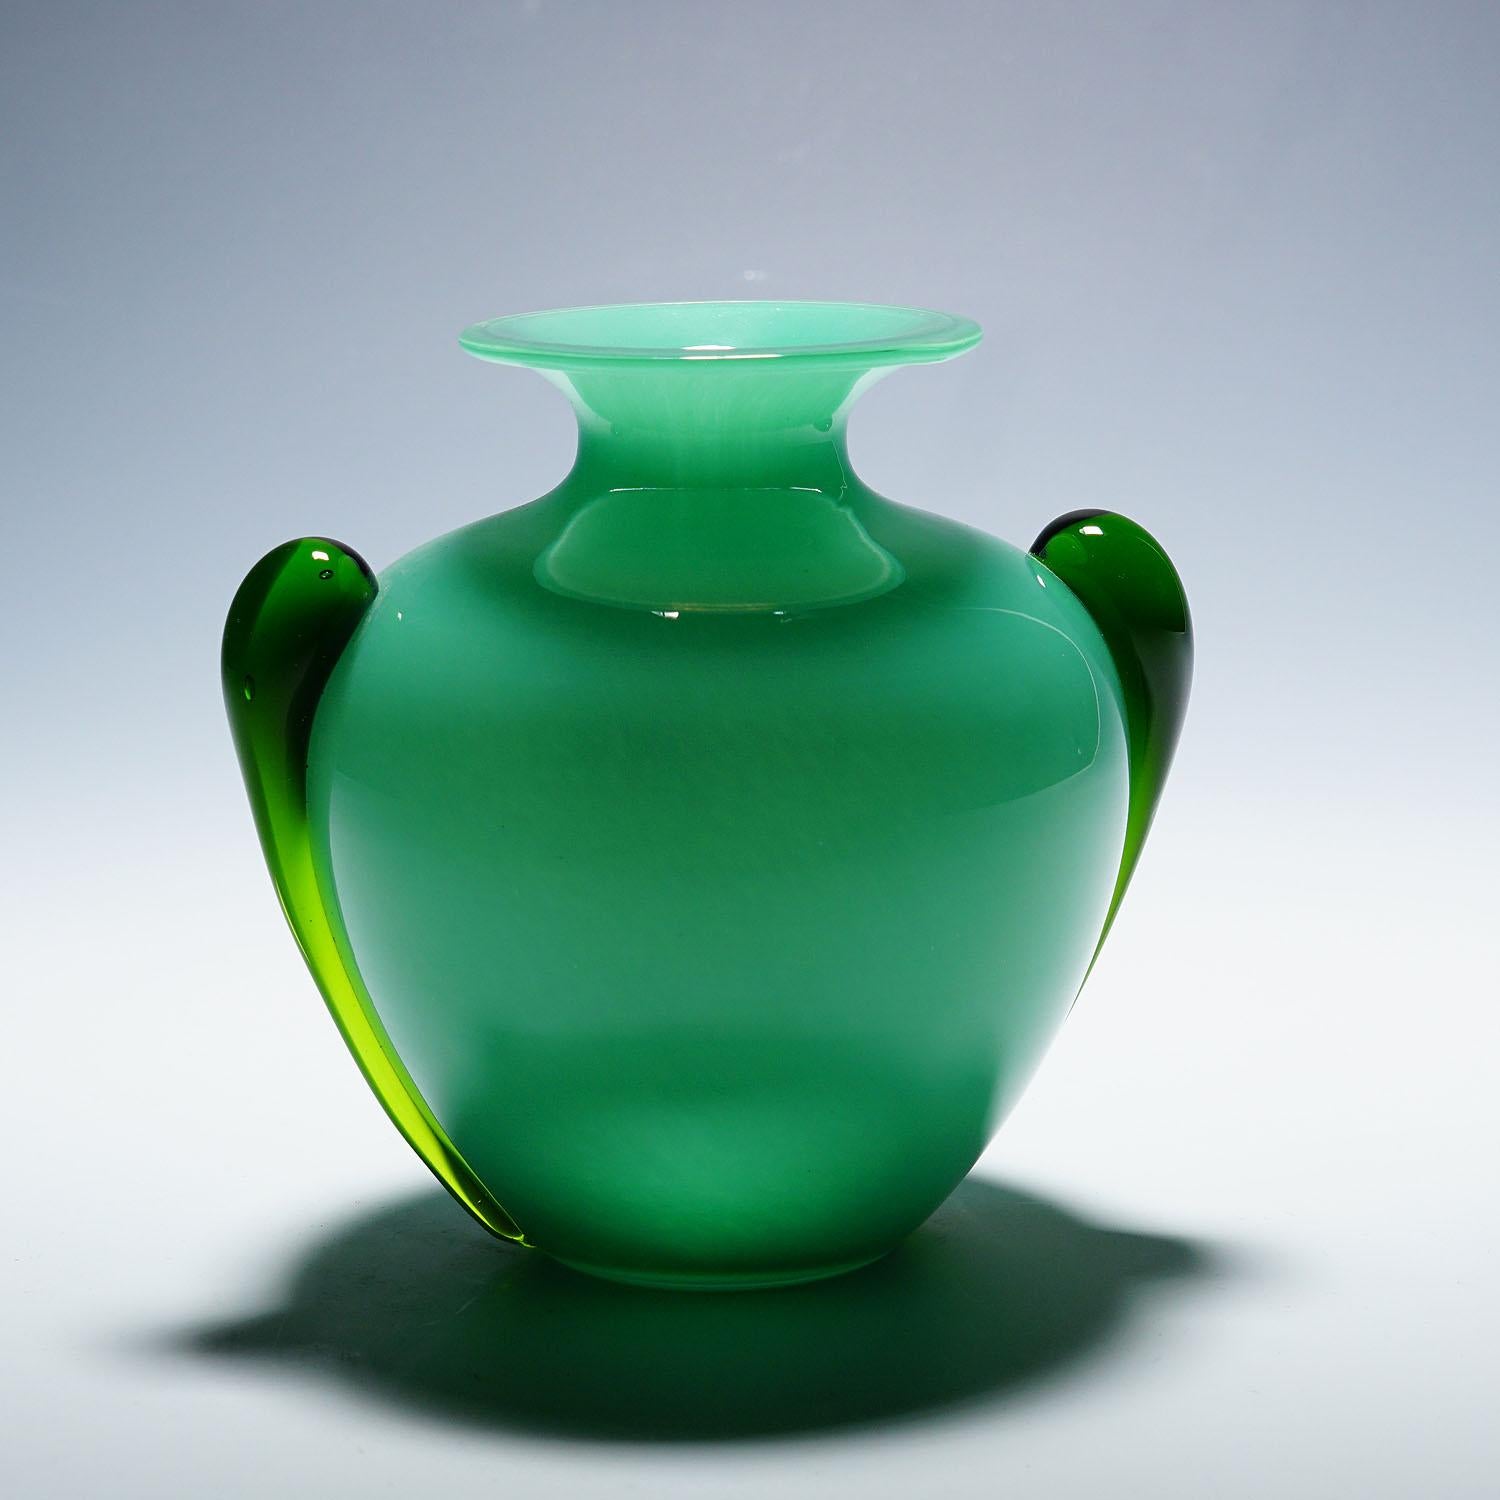 Vase Vintage en verre d'art Soffiato Murano ca. 1950s
Article e7130
Un superbe vase en verre d'art de Murano. Verre opaque vert fin avec recouvrement en verre clair et poignées en forme de goutte d'eau. Producteur inconnu, très probablement Murano